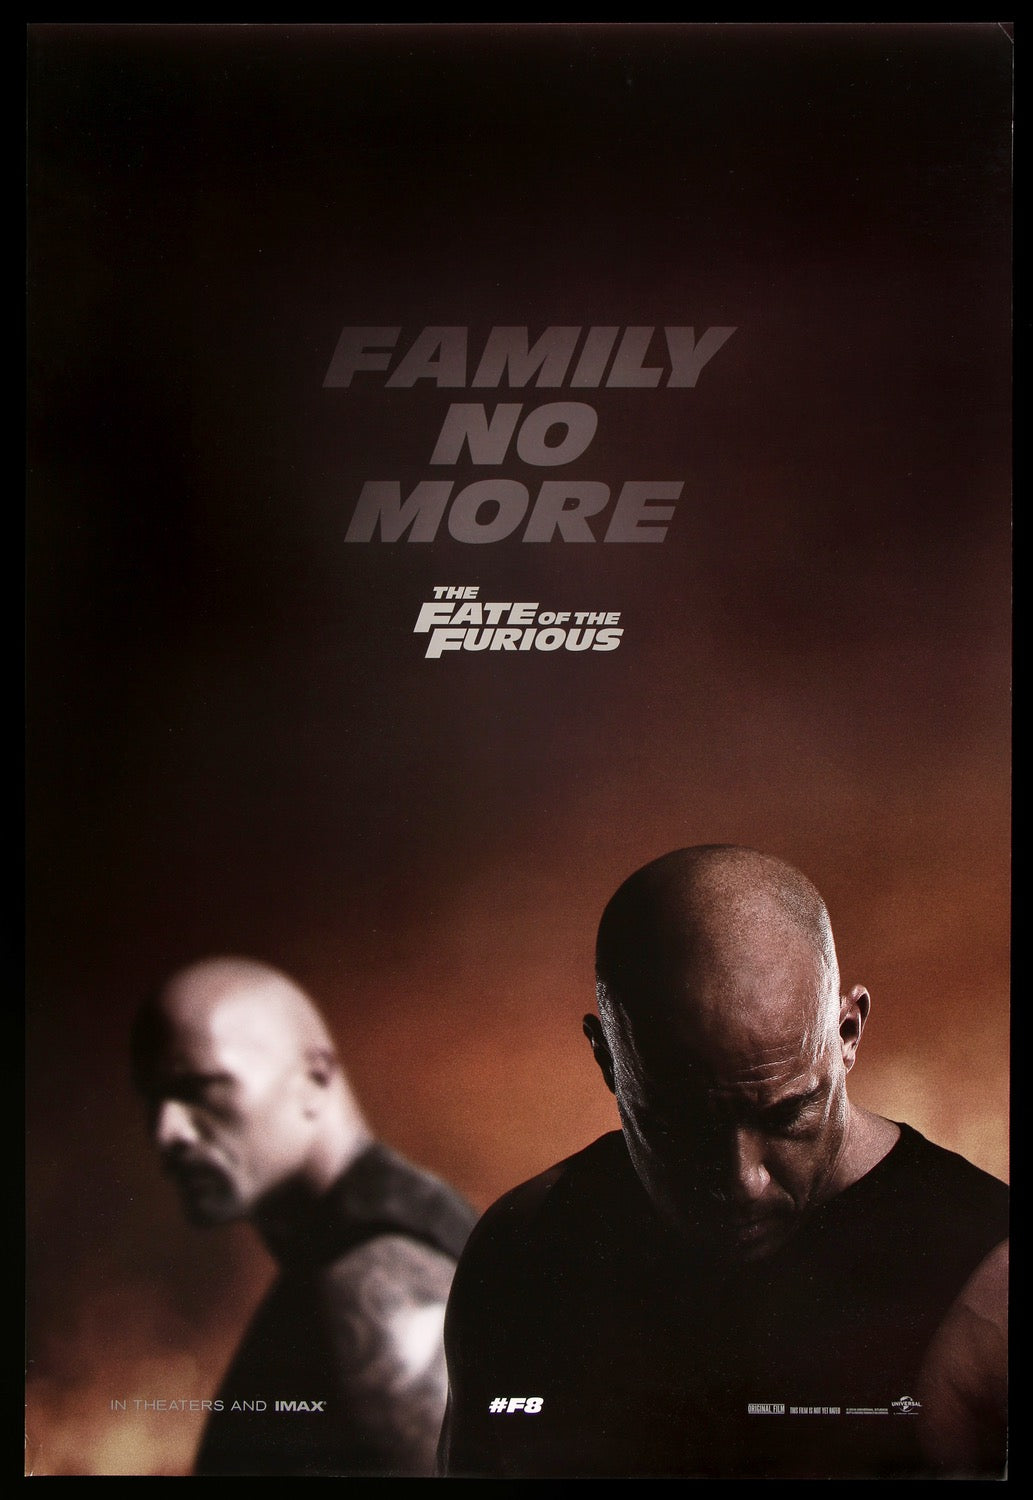 Fate of the Furious (2017) original movie poster for sale at Original Film Art